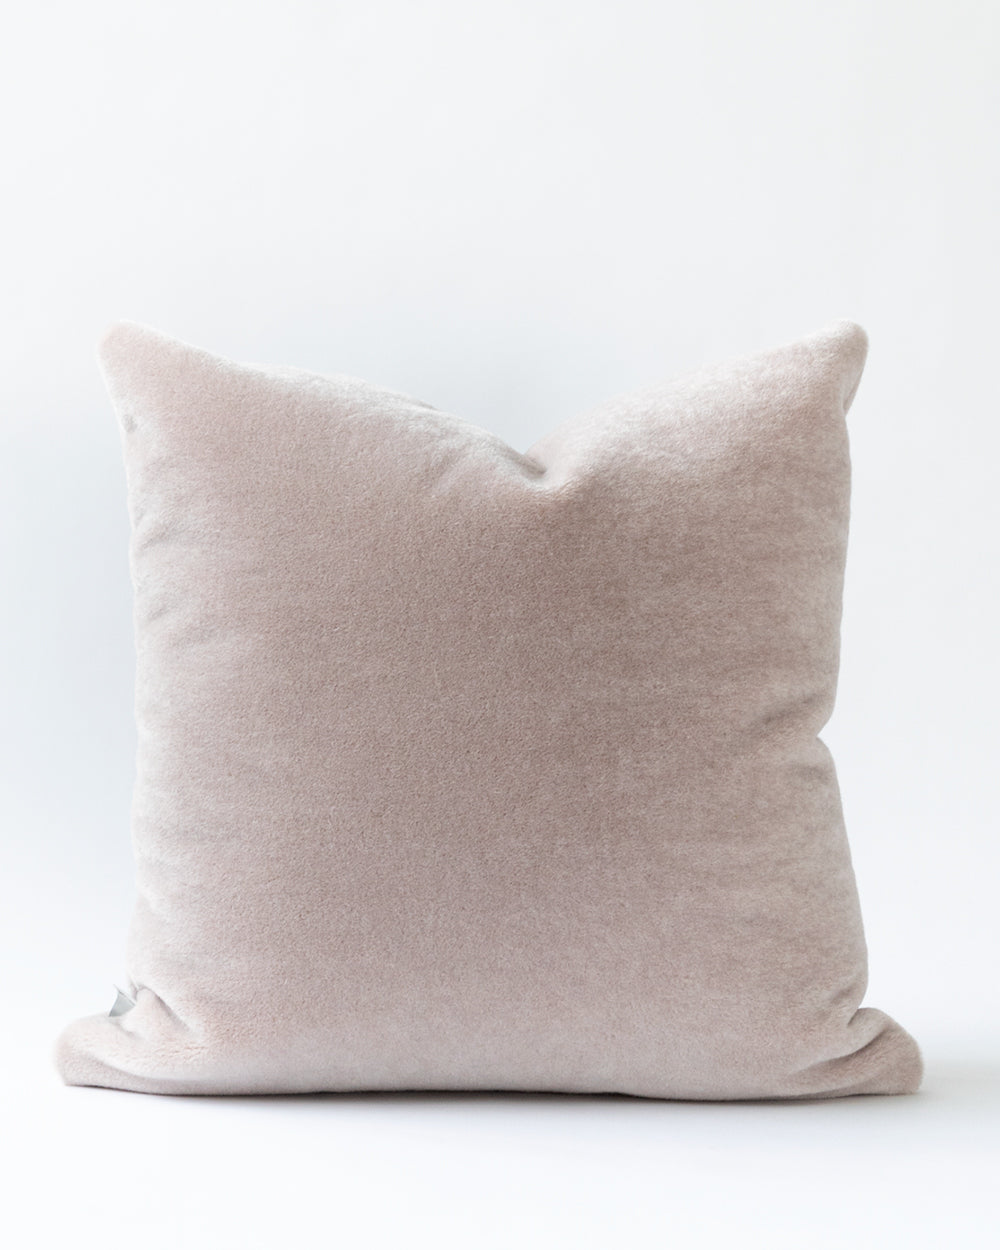 Lilac hued mohair pillow